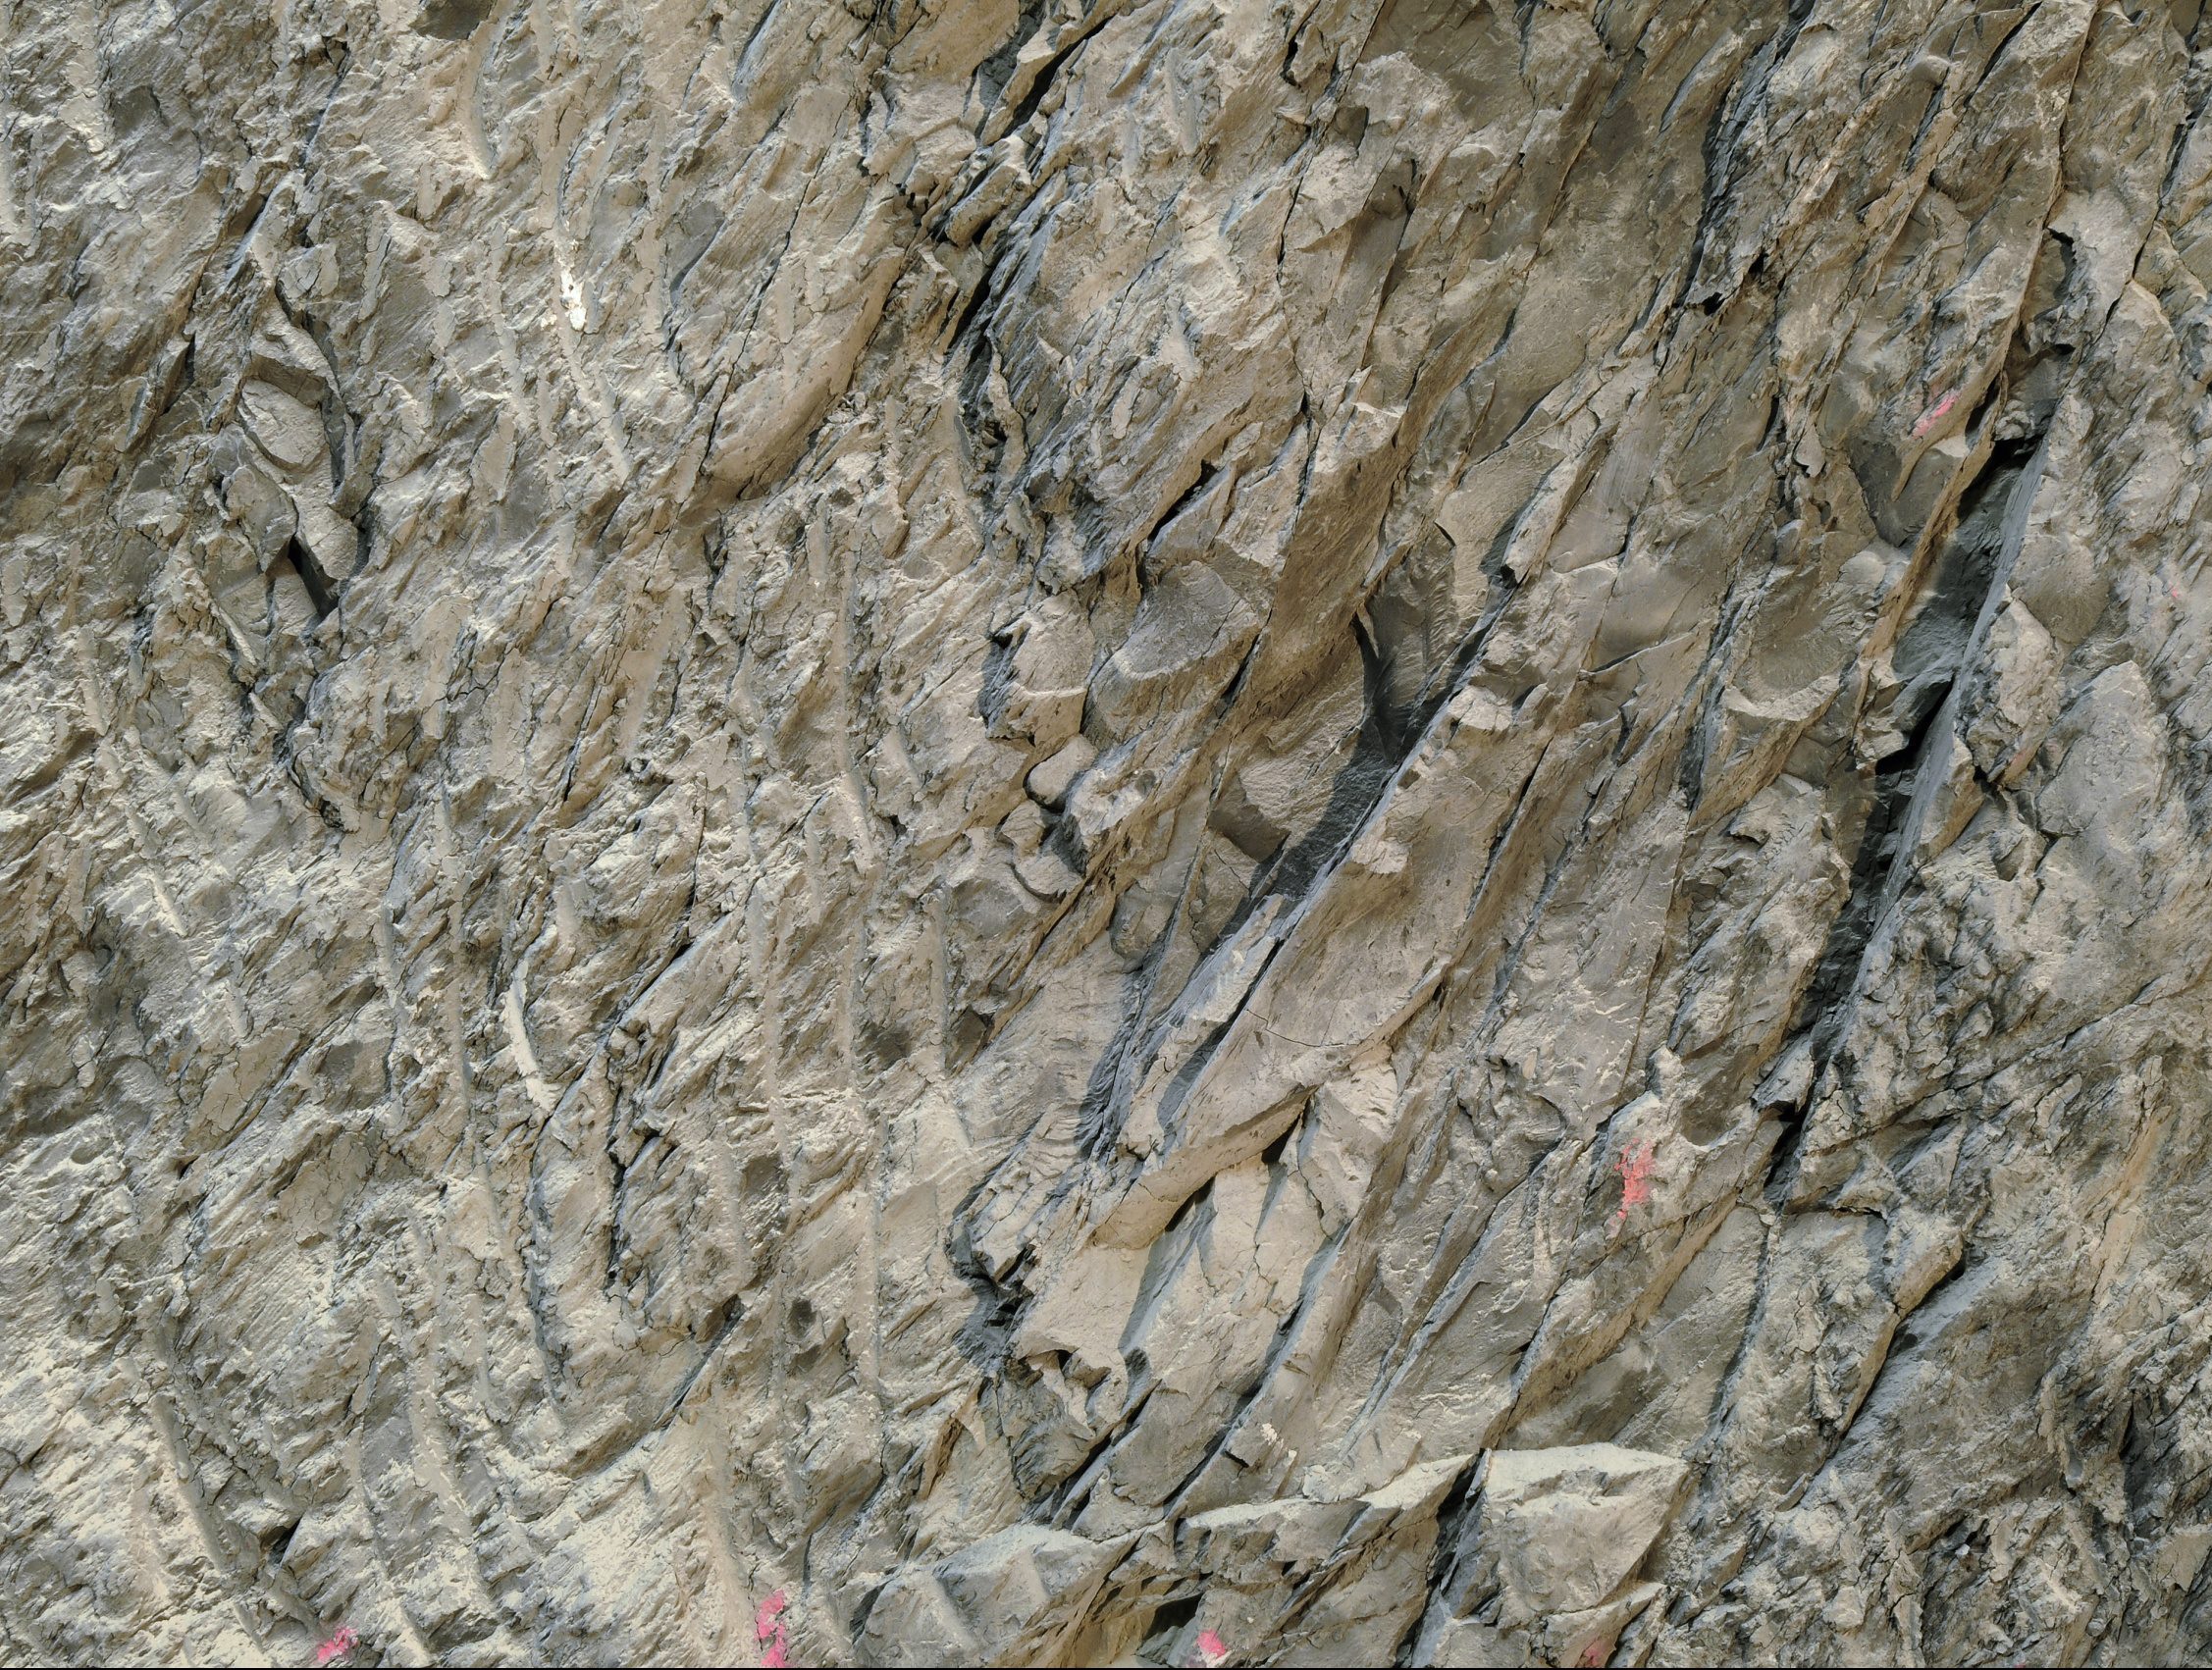 Gesteinsschicht des Opalinuston im Mont Terri mit Massstab für Grösseneinordnung